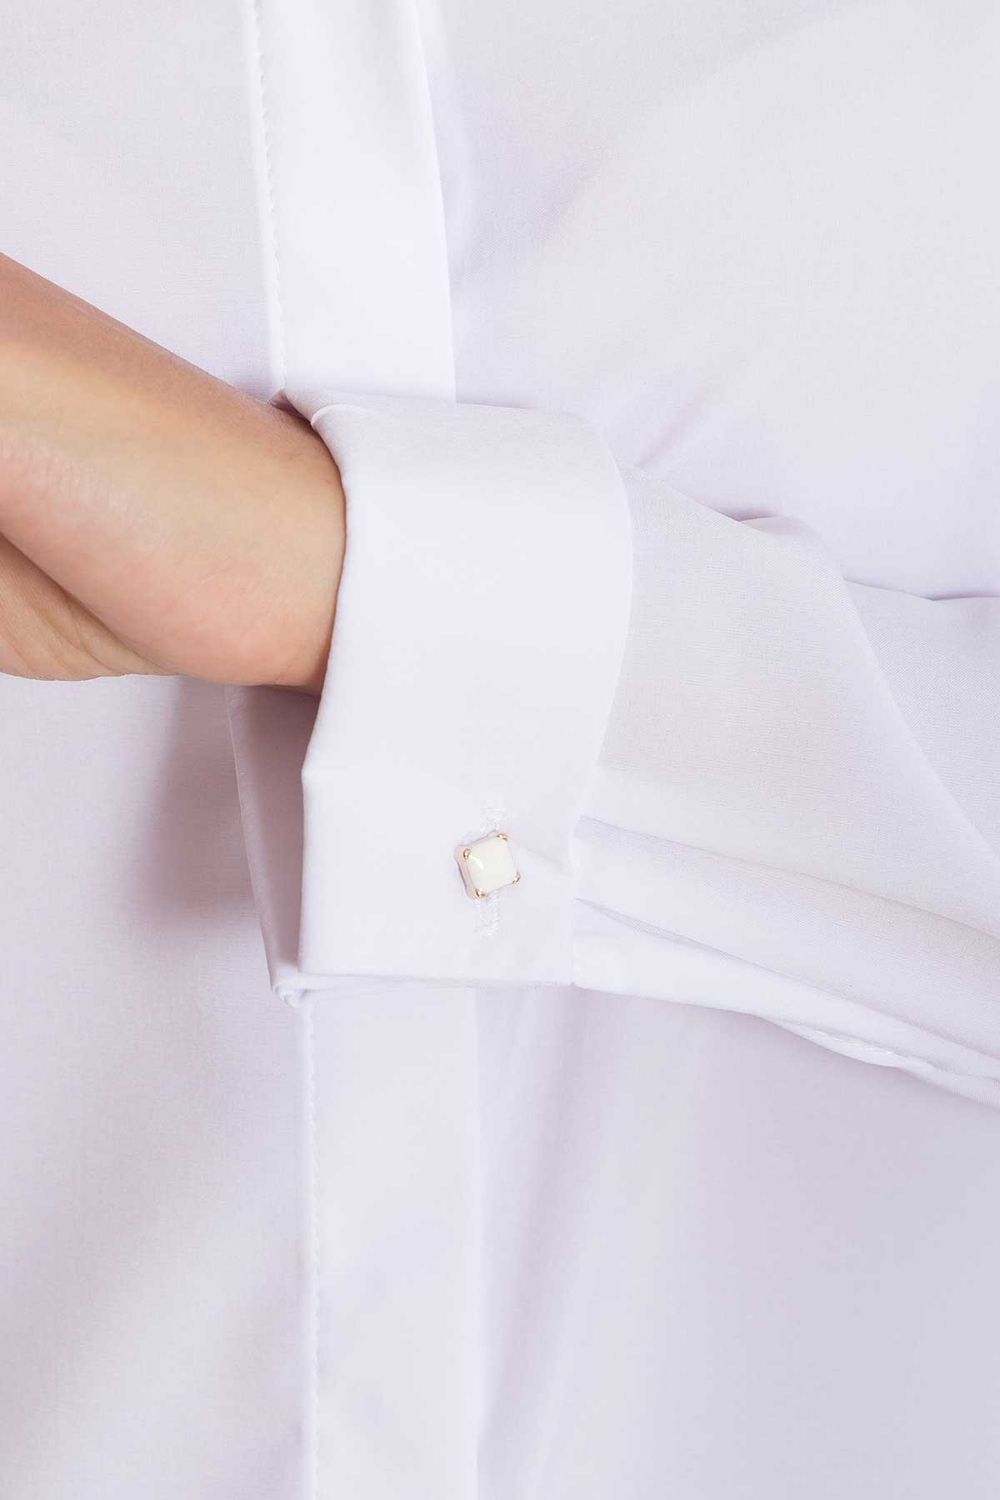 Біла офісна блузка в діловому стилі - фото